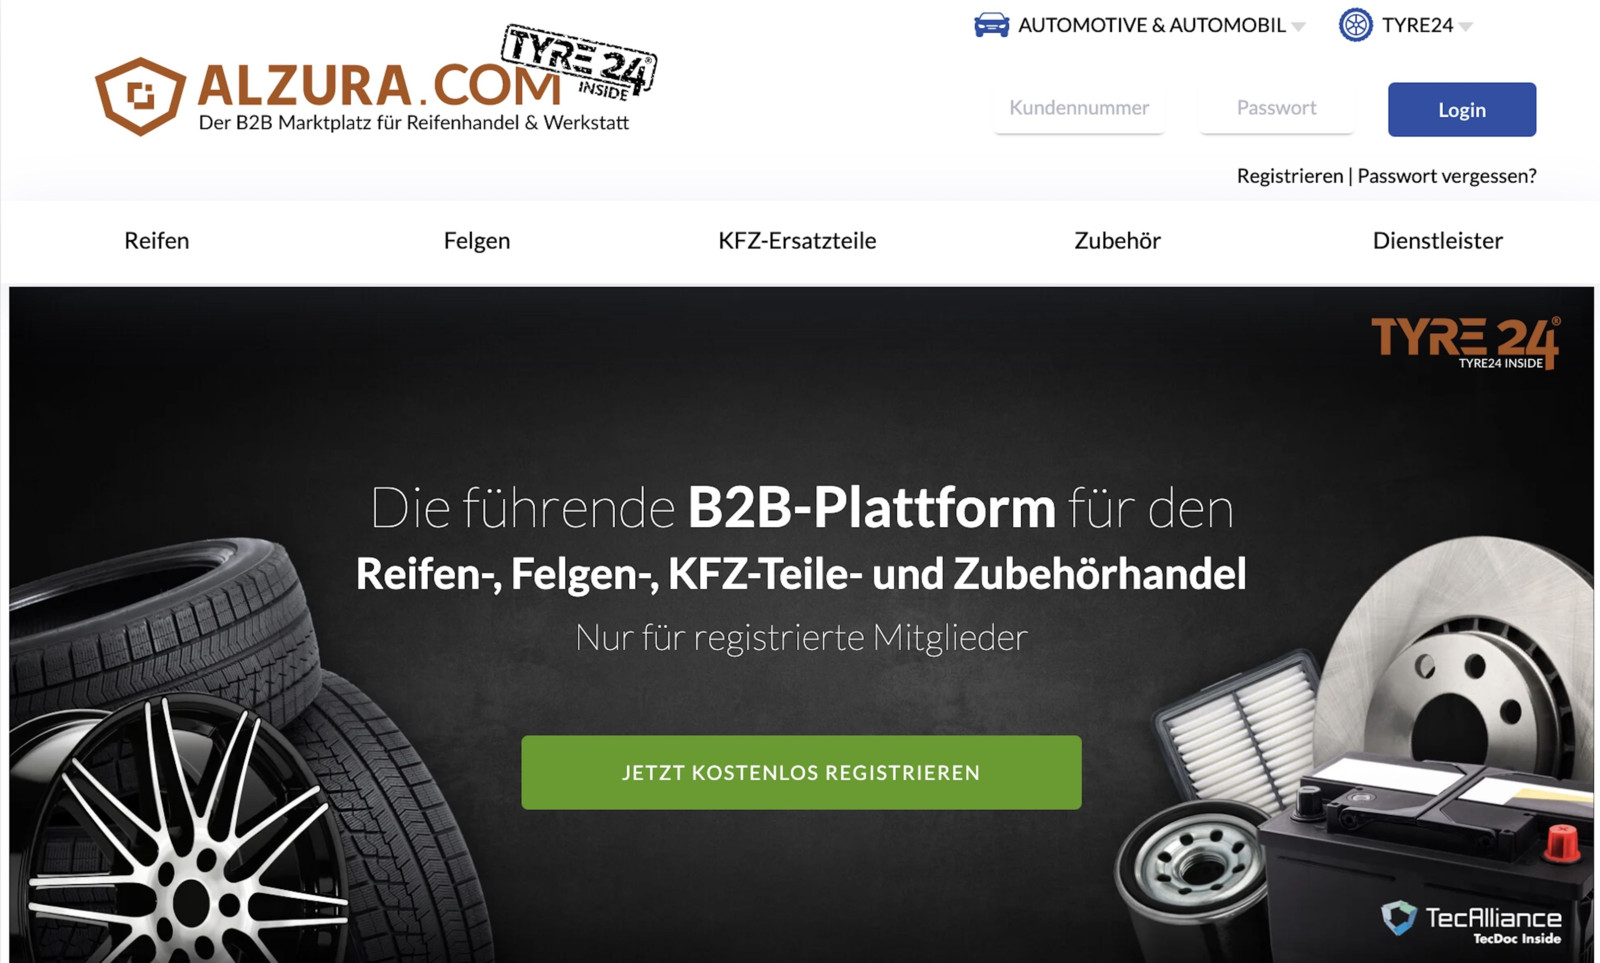 Auf der Alzura Tyre24-Plattform wird in den Segmenten Reifen, Felgen, KFZ-Ersatzteile und Zubehör ein Abbild des automobilen Aftermarkets geschaffen.